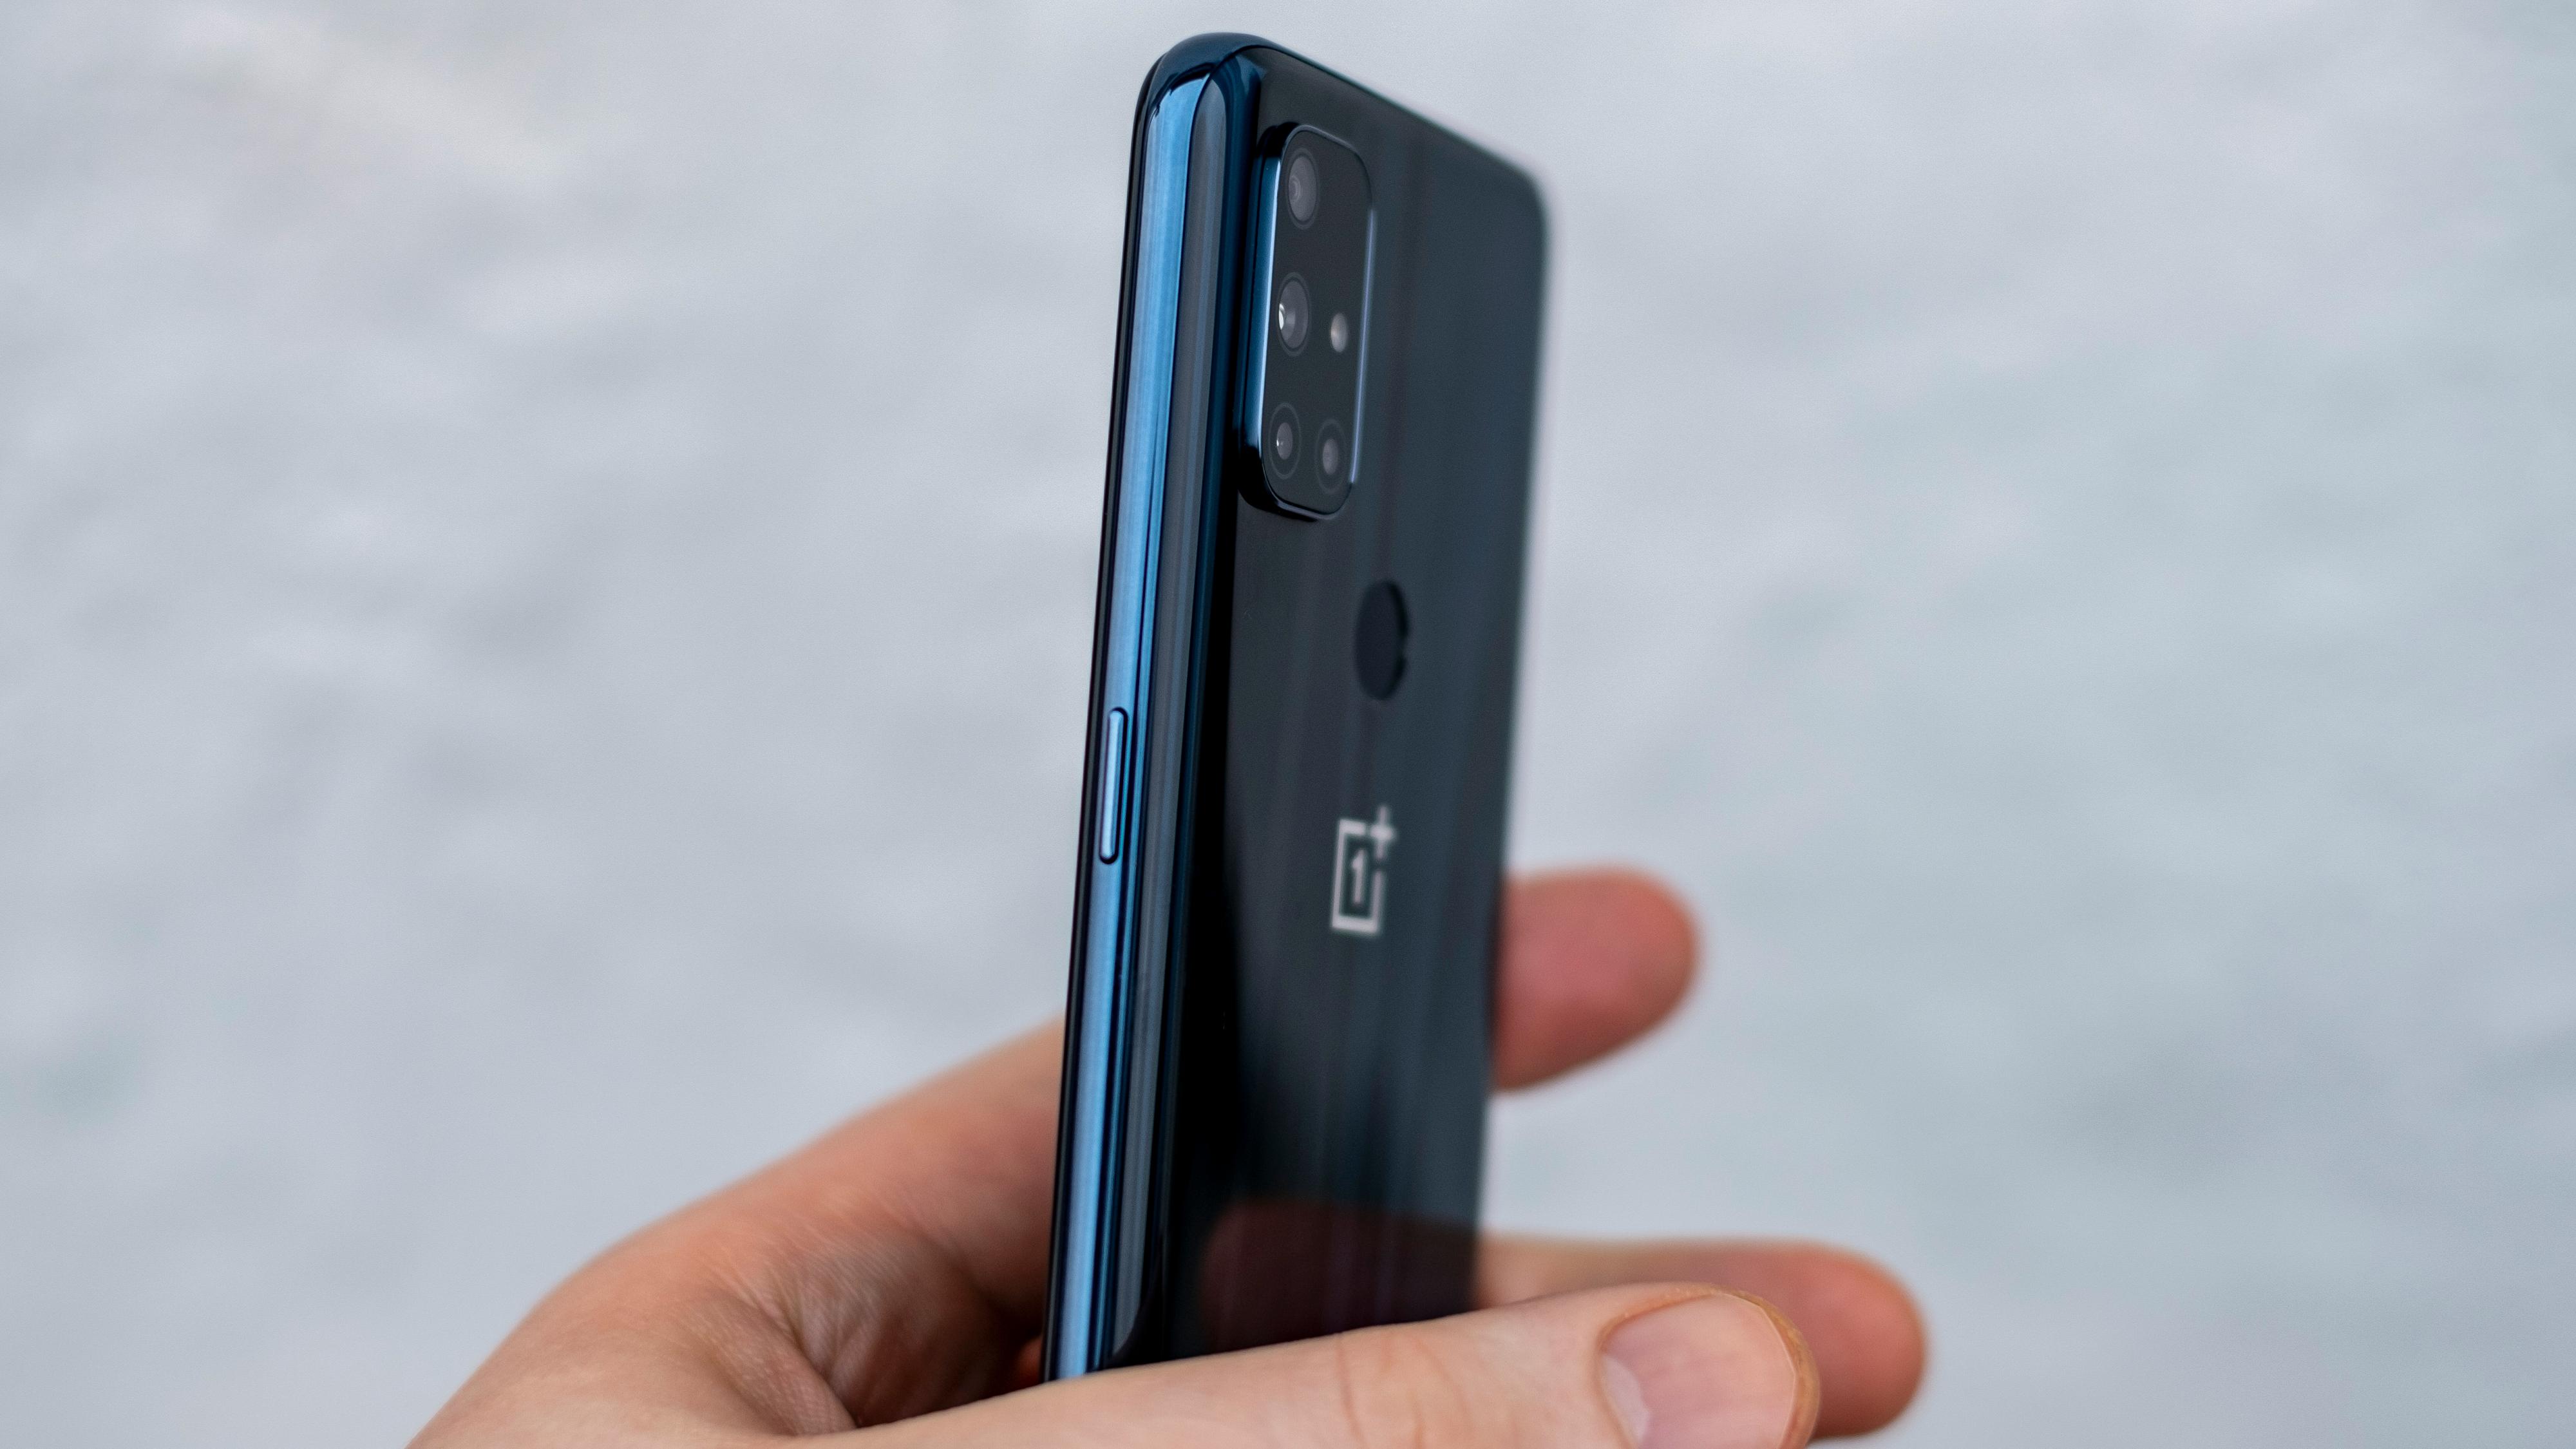 Pen ytre ramme, og kompakt kamerahump på baksiden. Fingerleseren er såvidt synlig over OnePlus-logoen midt bakpå.